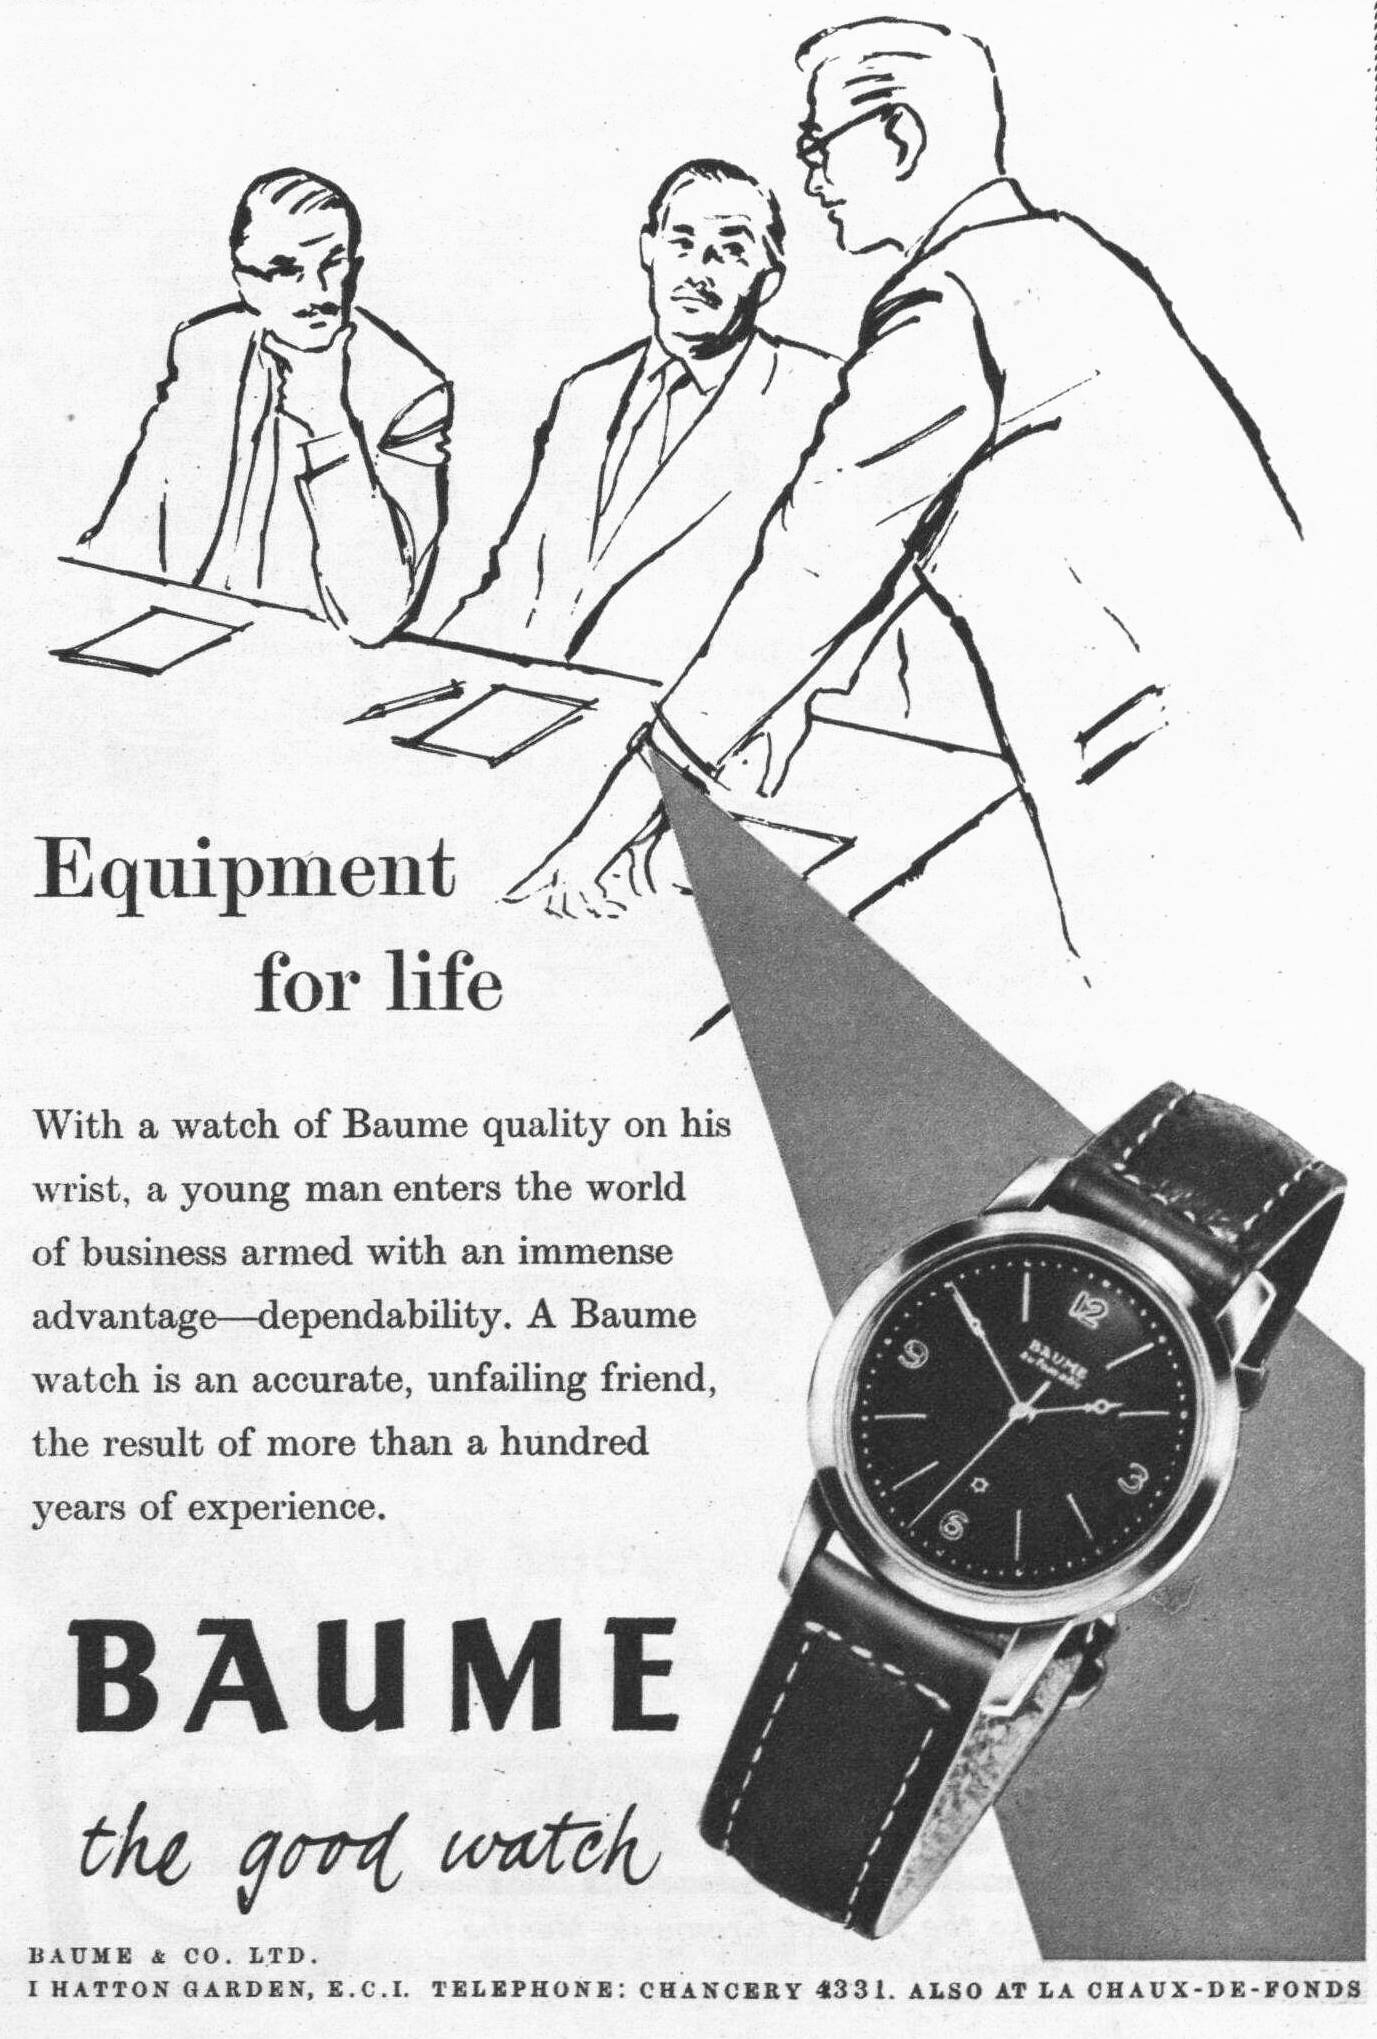 Baume & Mercier 1956 01.jpg